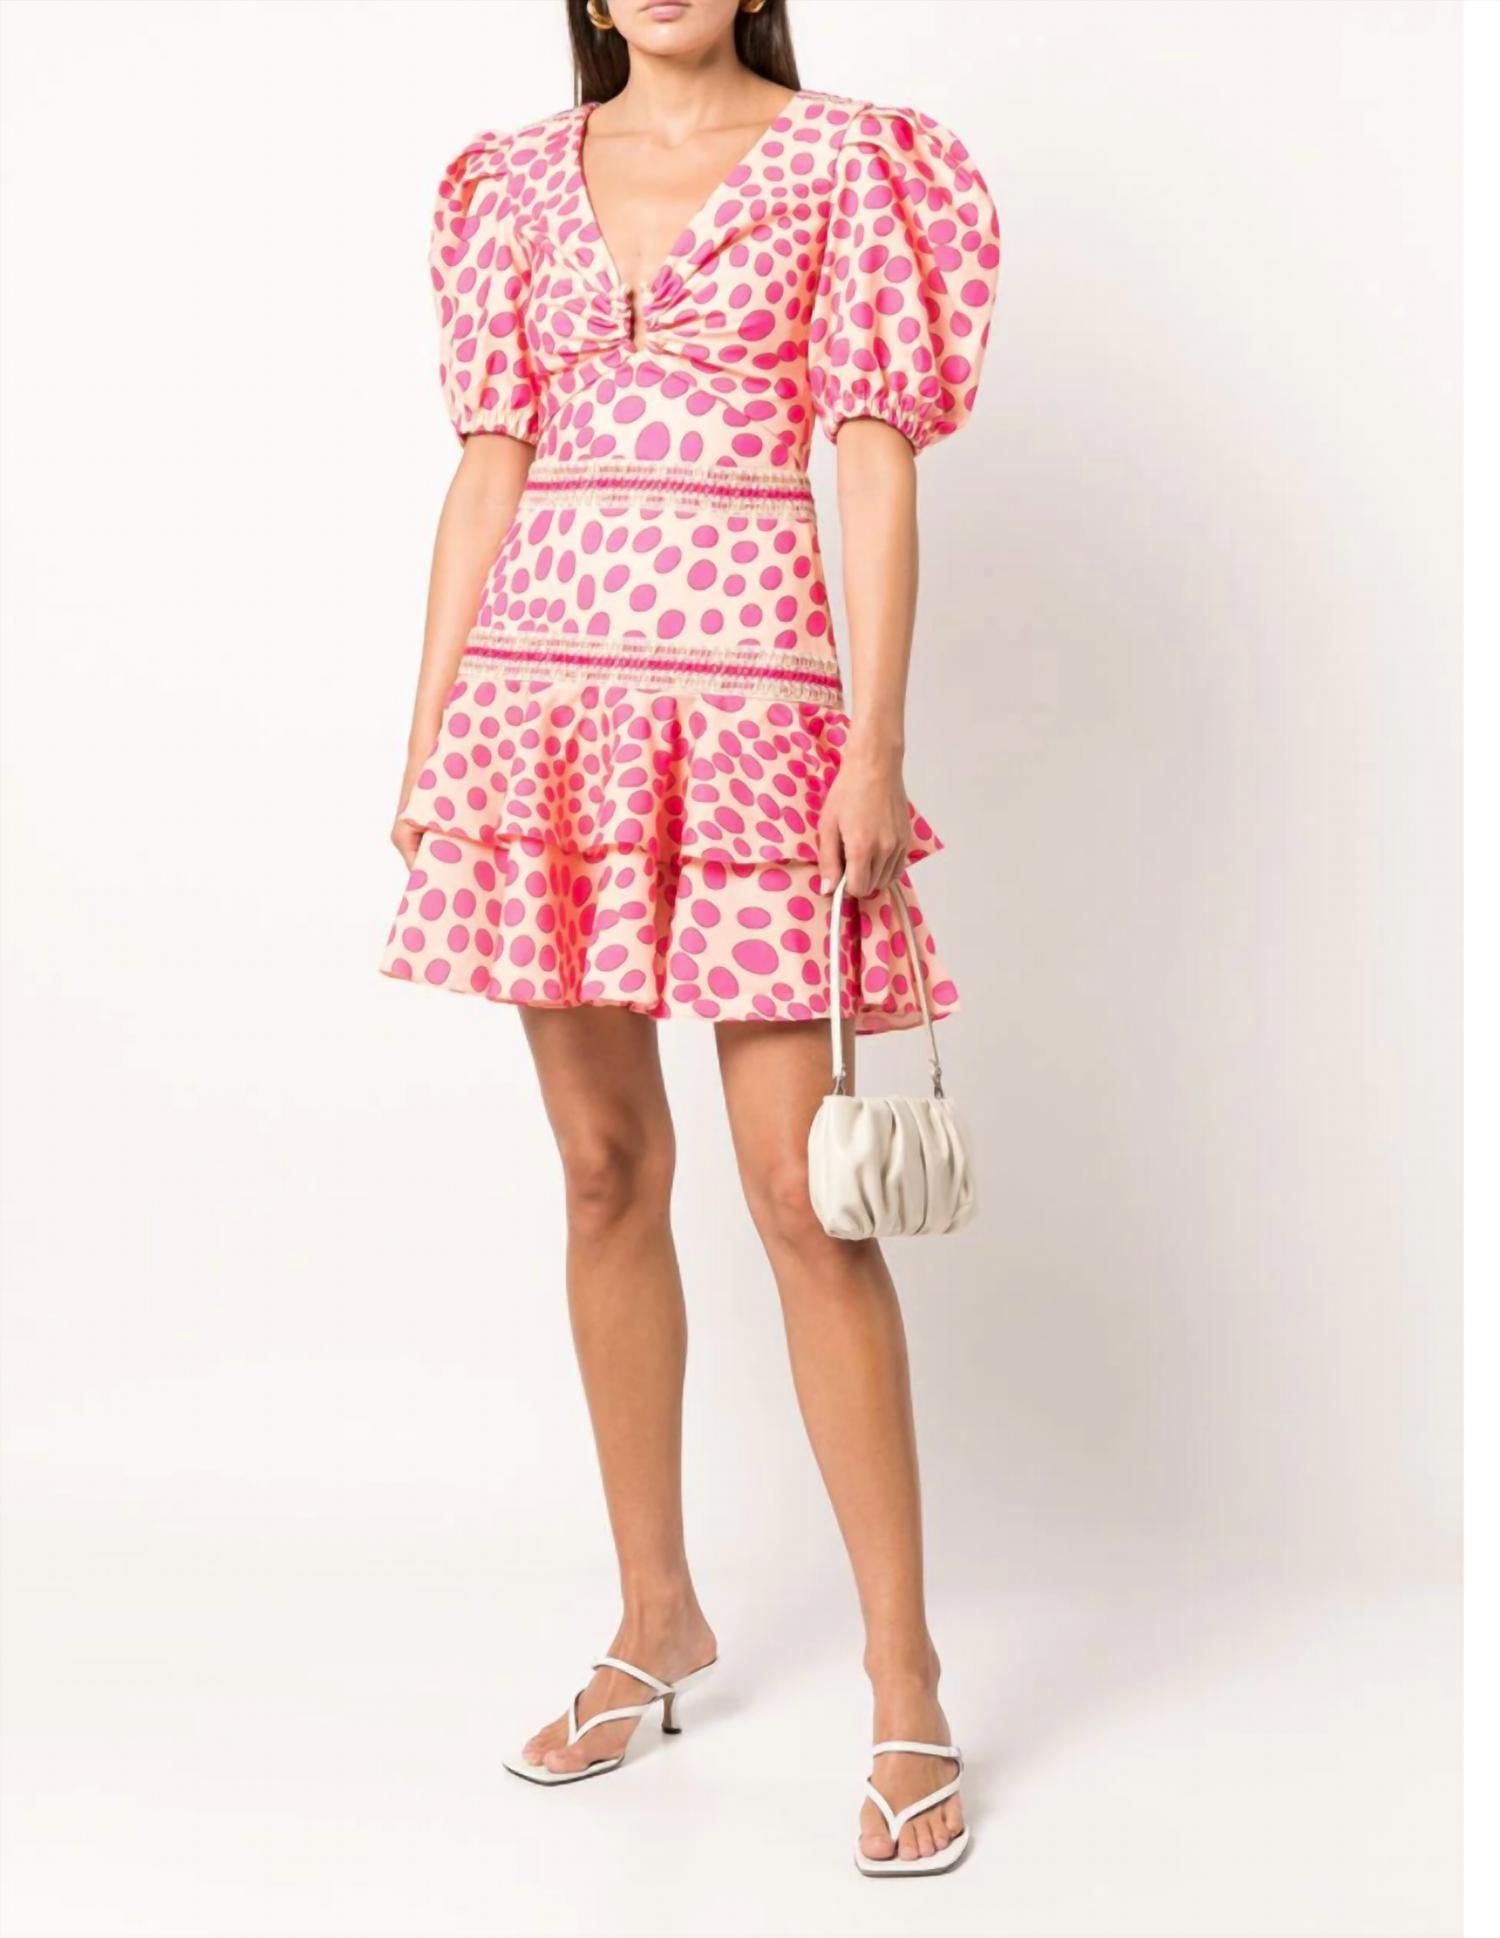 PATBO Bossa Lace Trim Puff Sleeve Layered Mini Dress in Pink / Apricot